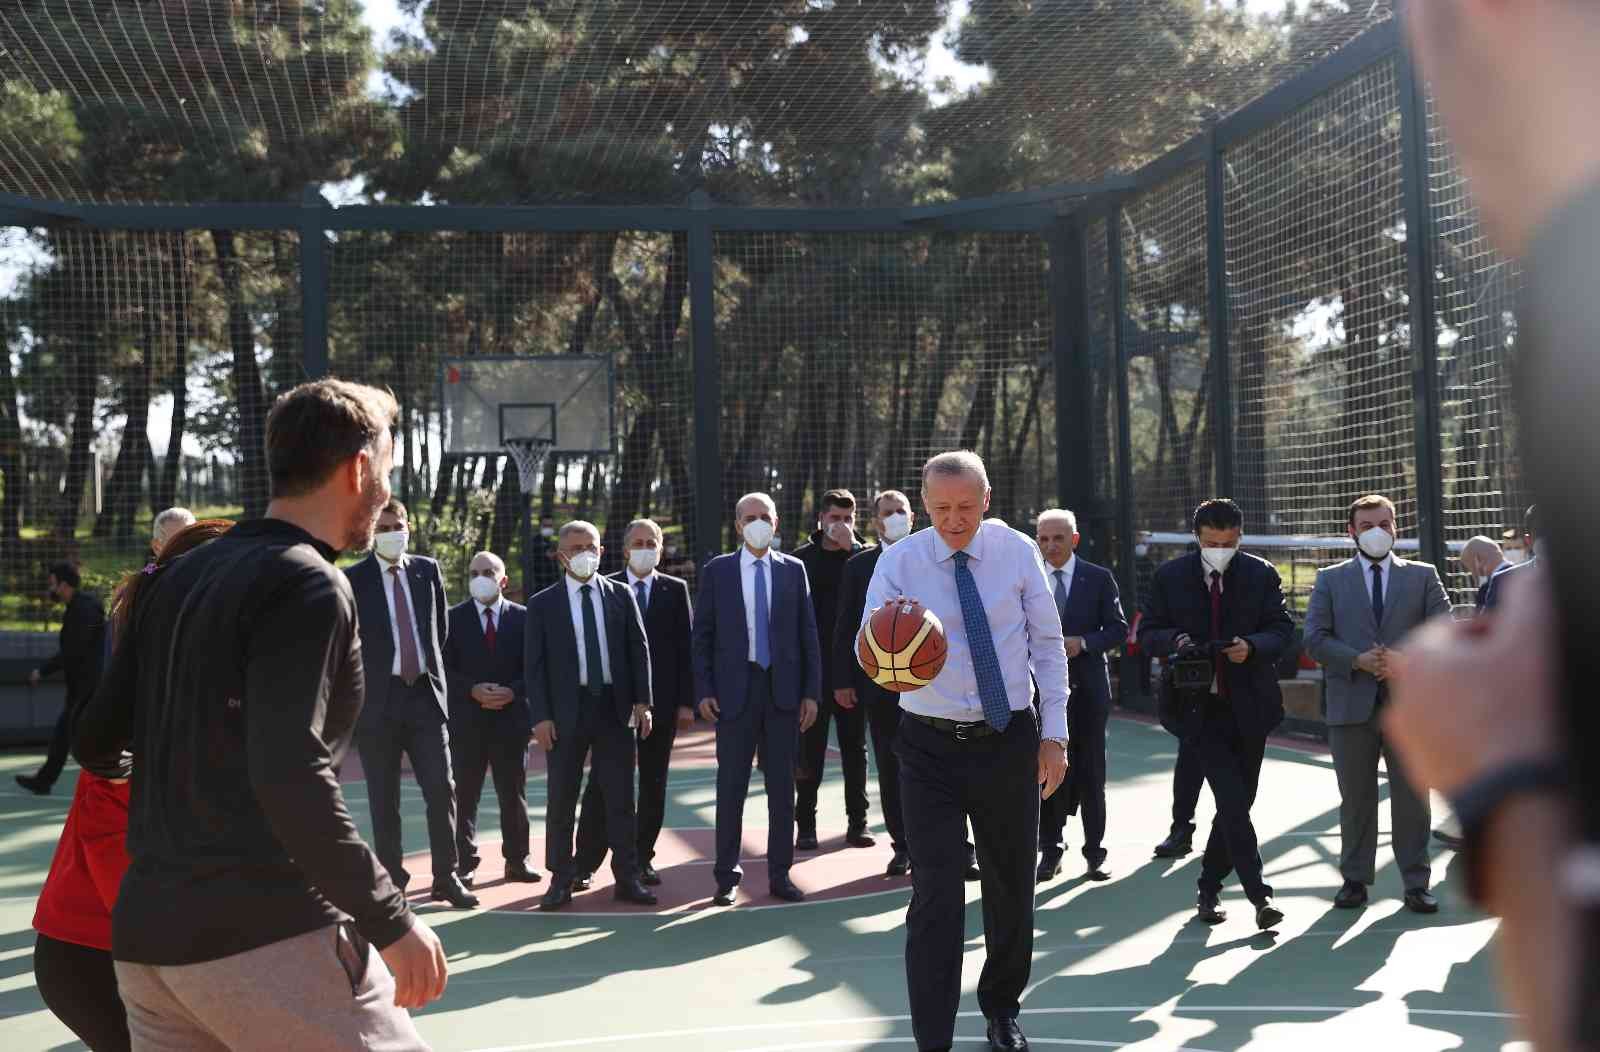 Cumhurbaşkanı Erdoğan: “En büyük projemiz ise Atatürk Havalimanı alanına yapacağımız 7,7 milyon metrekare büyüklüğündeki millet bahçemiz olacaktır”